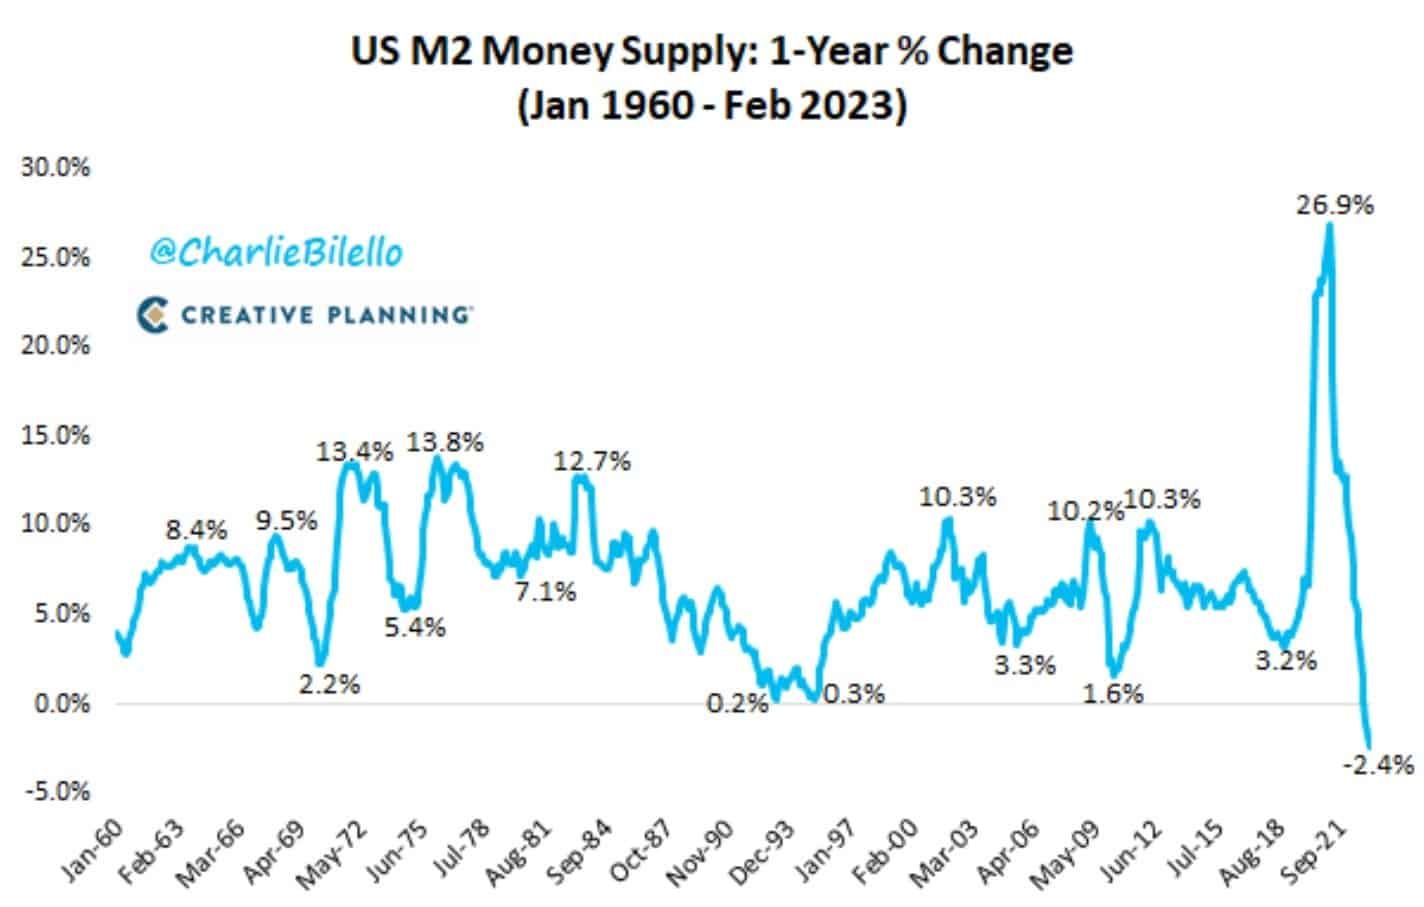 Pokles M2 objemu amerických dolarů v oběhu